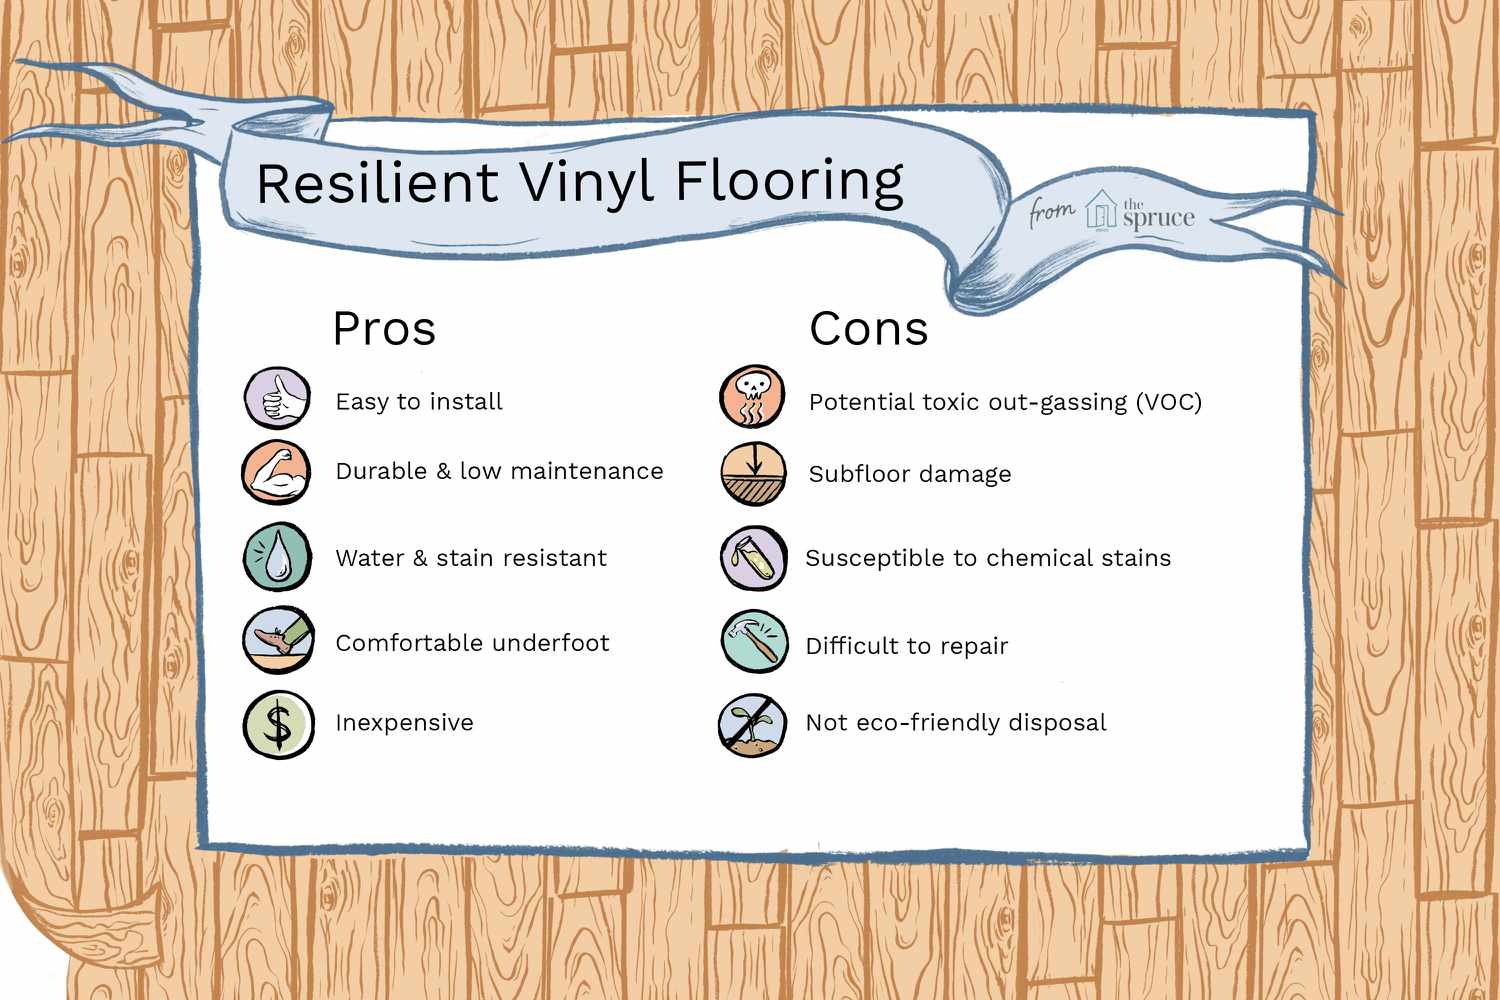 Ilustração dos prós e contras do piso vinílico resiliente